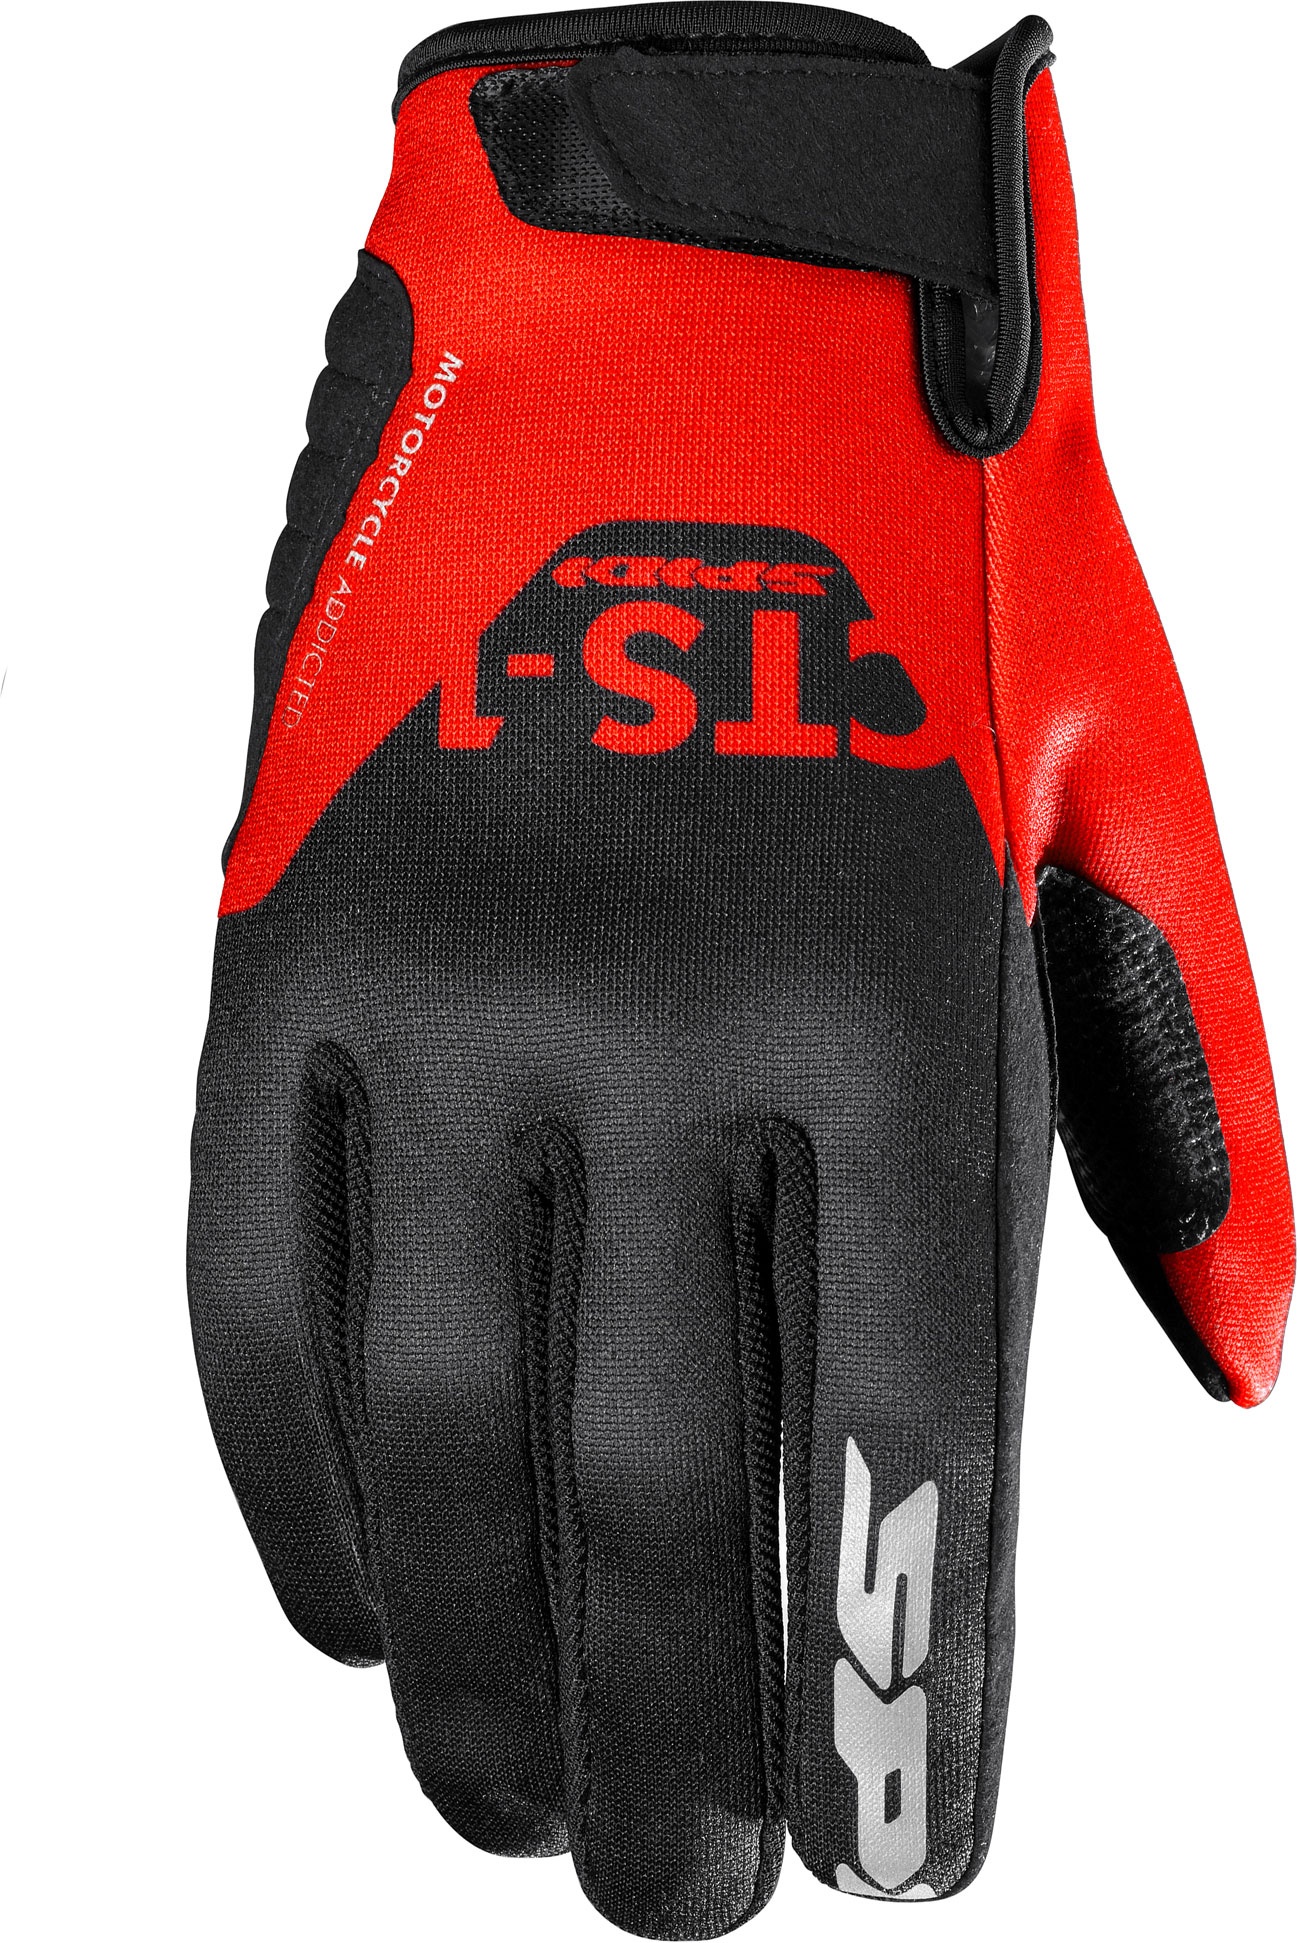 Spidi CTS-1, gants - Noir/Rouge - S